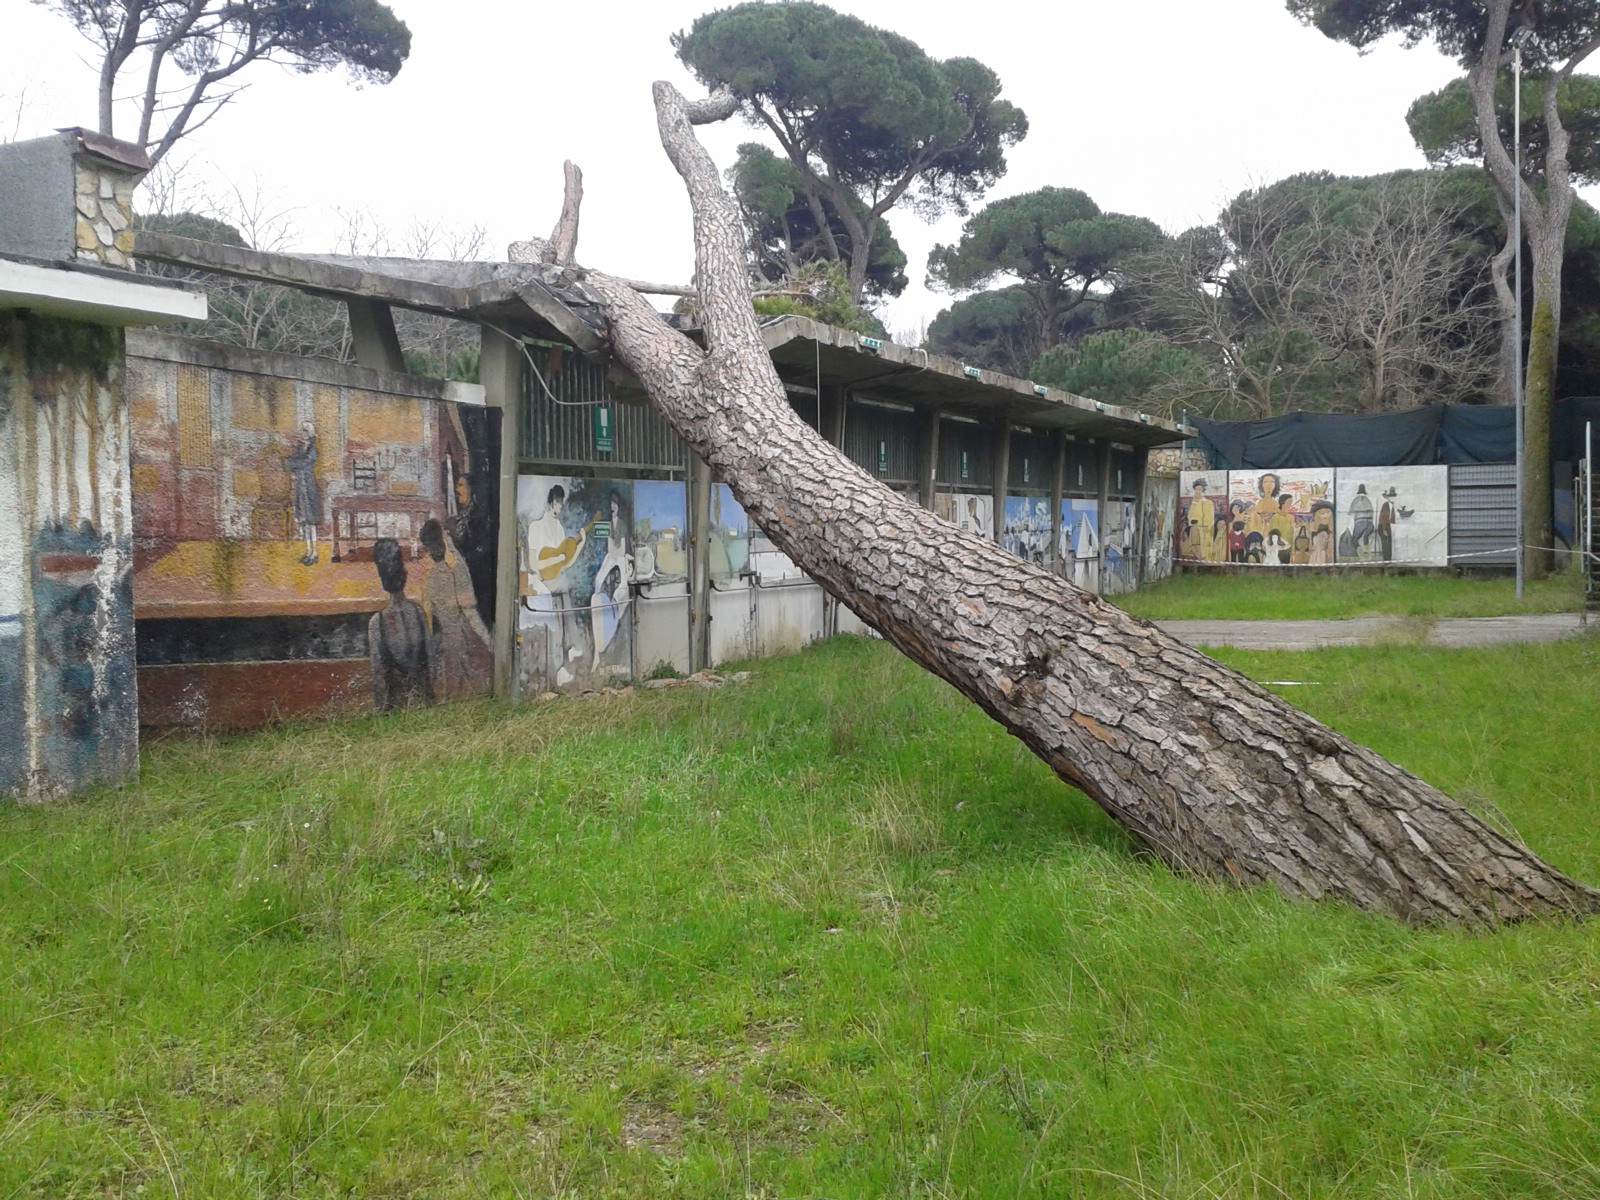 Gradinate ripulite per Viareggio-Piombino. Ma c’è un pino appoggiato all’ingresso